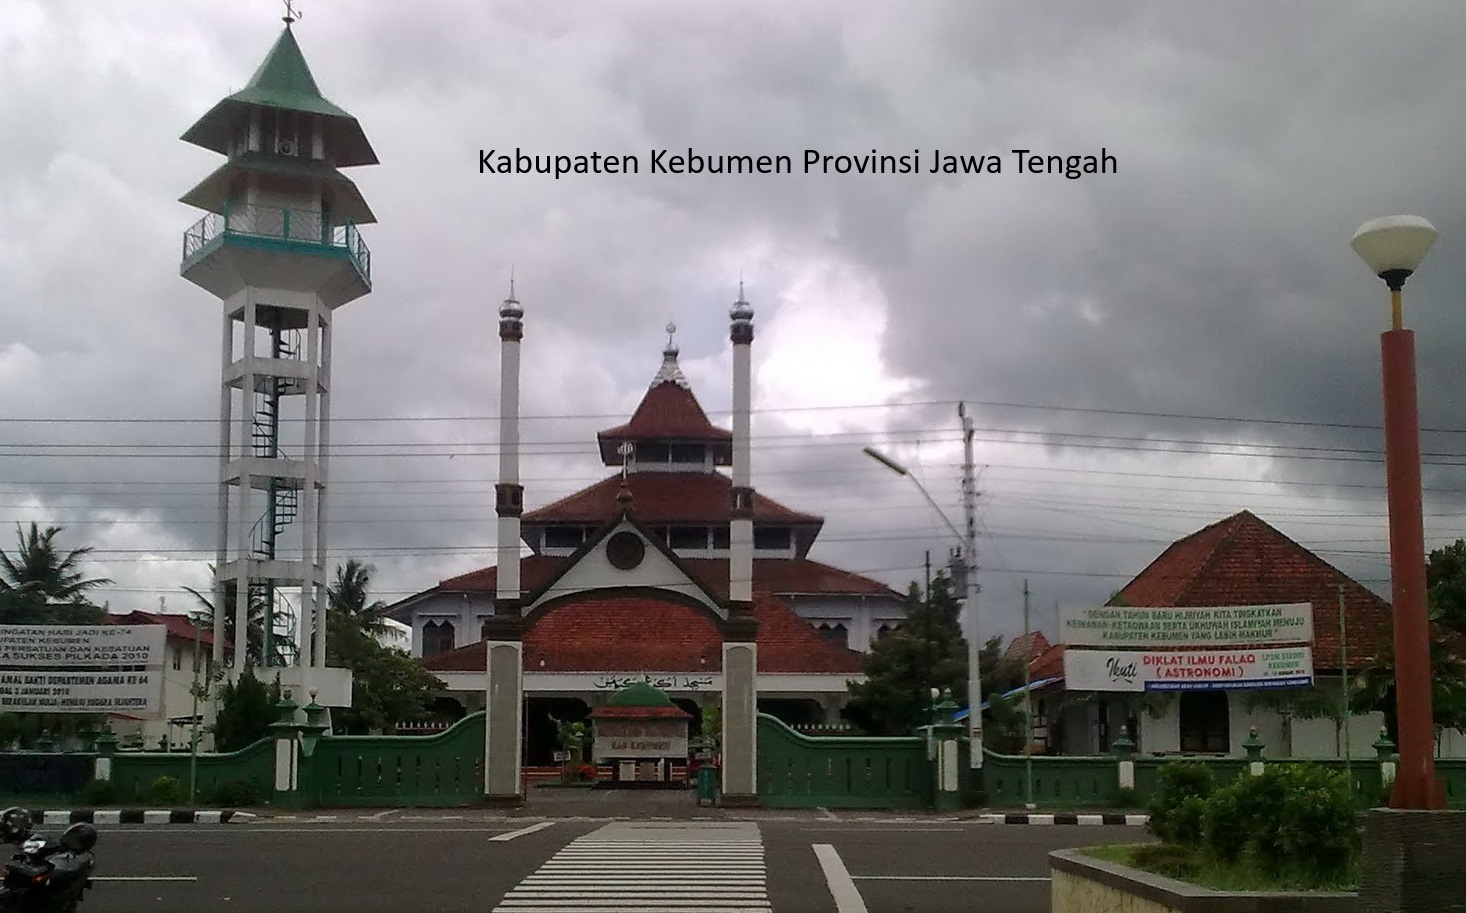 Wacana Pemekaran Wilayah Jawa Tengah: Kota Gombong sebagai Otonomi Baru di Kabupaten Kebumen